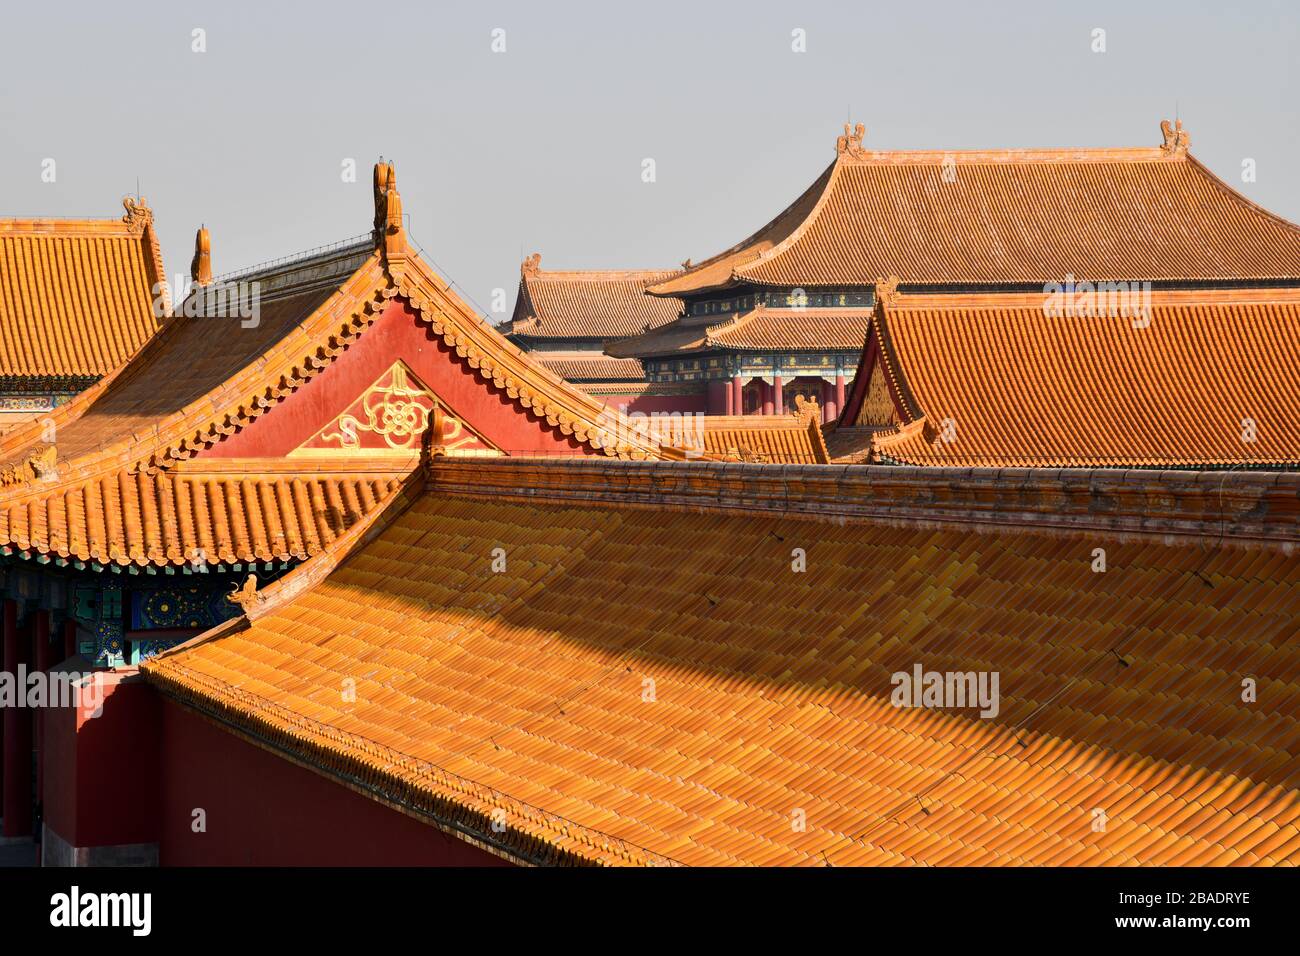 Vue comprimée d'un grand nombre de toits en tuiles d'orange des anciens palais de la Cité interdite à Beijing en Chine Banque D'Images